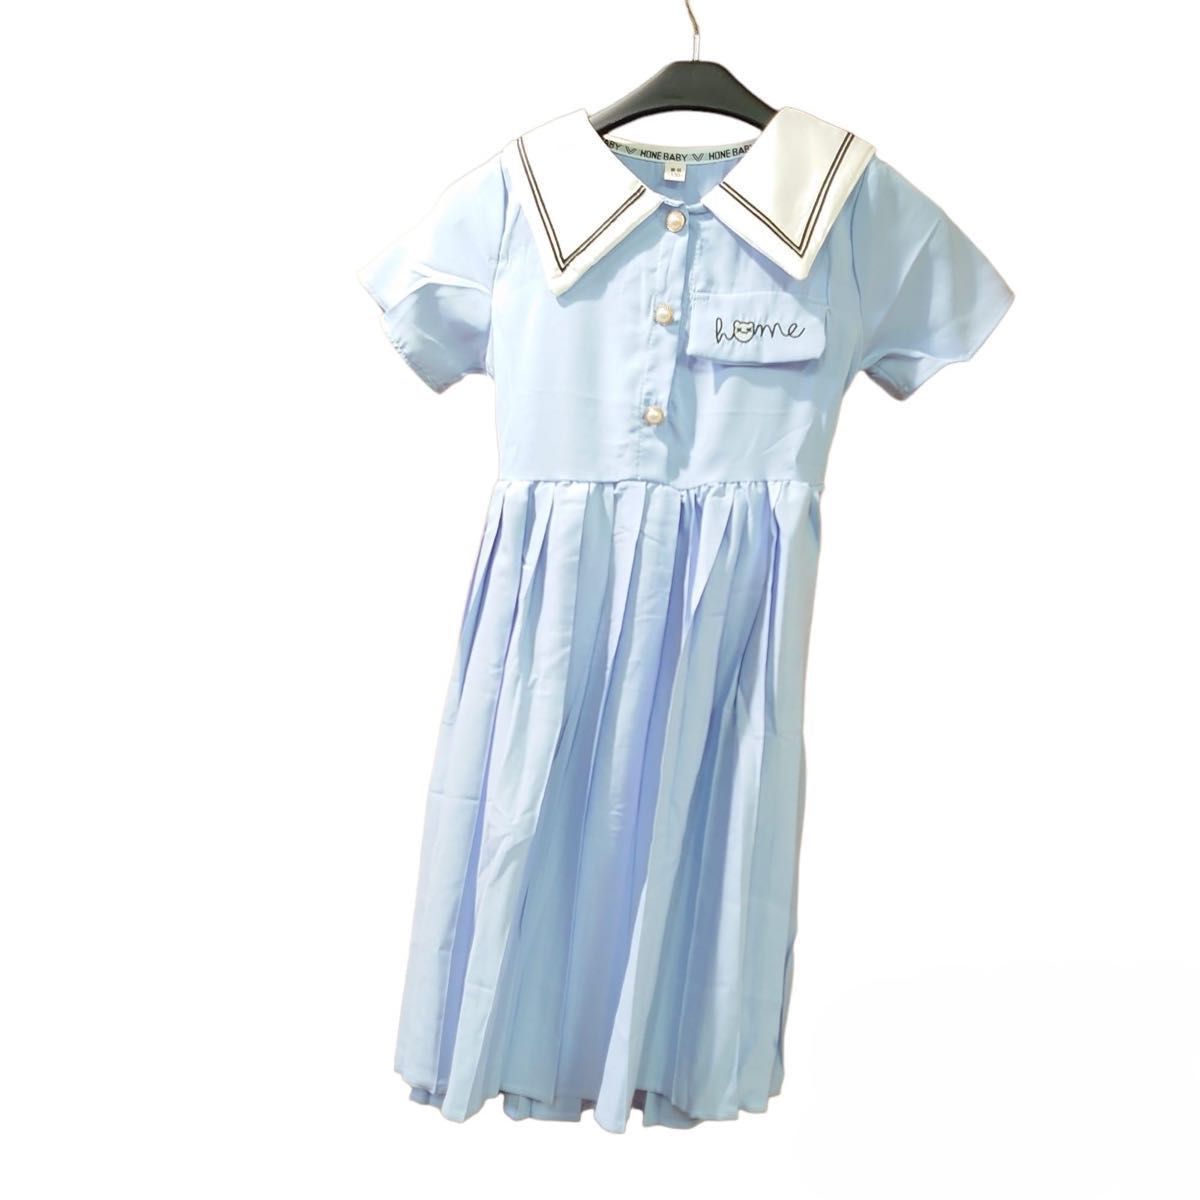 ワンピース 水色 ネクタイ 半袖 プリーツ スカート 綺麗  半袖 入学式 発表会 制服 女の子 子ども 可愛い セーラー服 襟